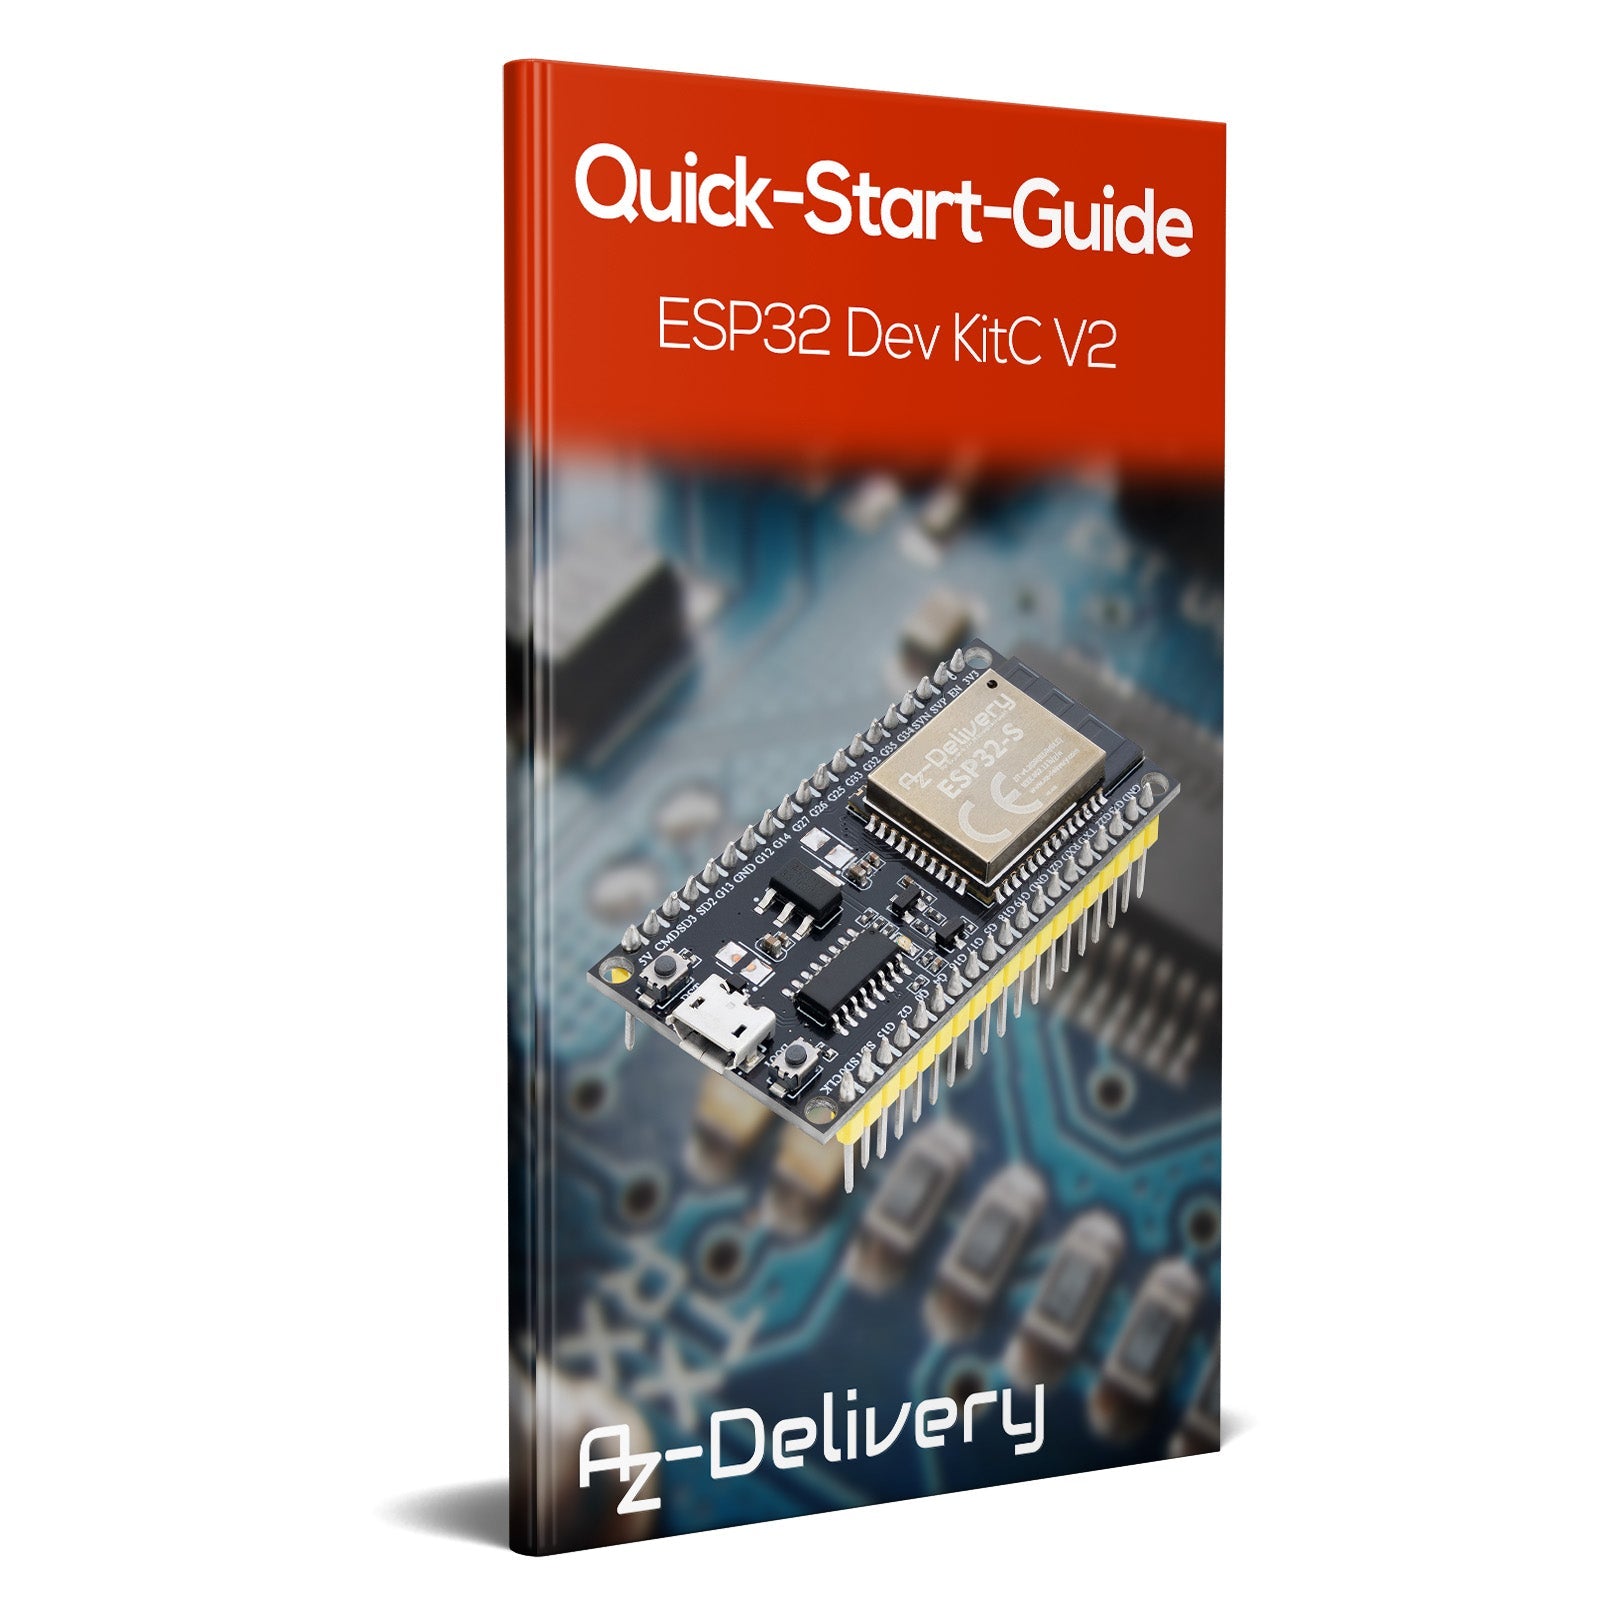 ESP32S NodeMCU Module WLAN WiFi Dev Kit C Development Board mit CH340 (Nachfolgermodell zum ESP8266) kompatibel mit Arduino - AZ-Delivery